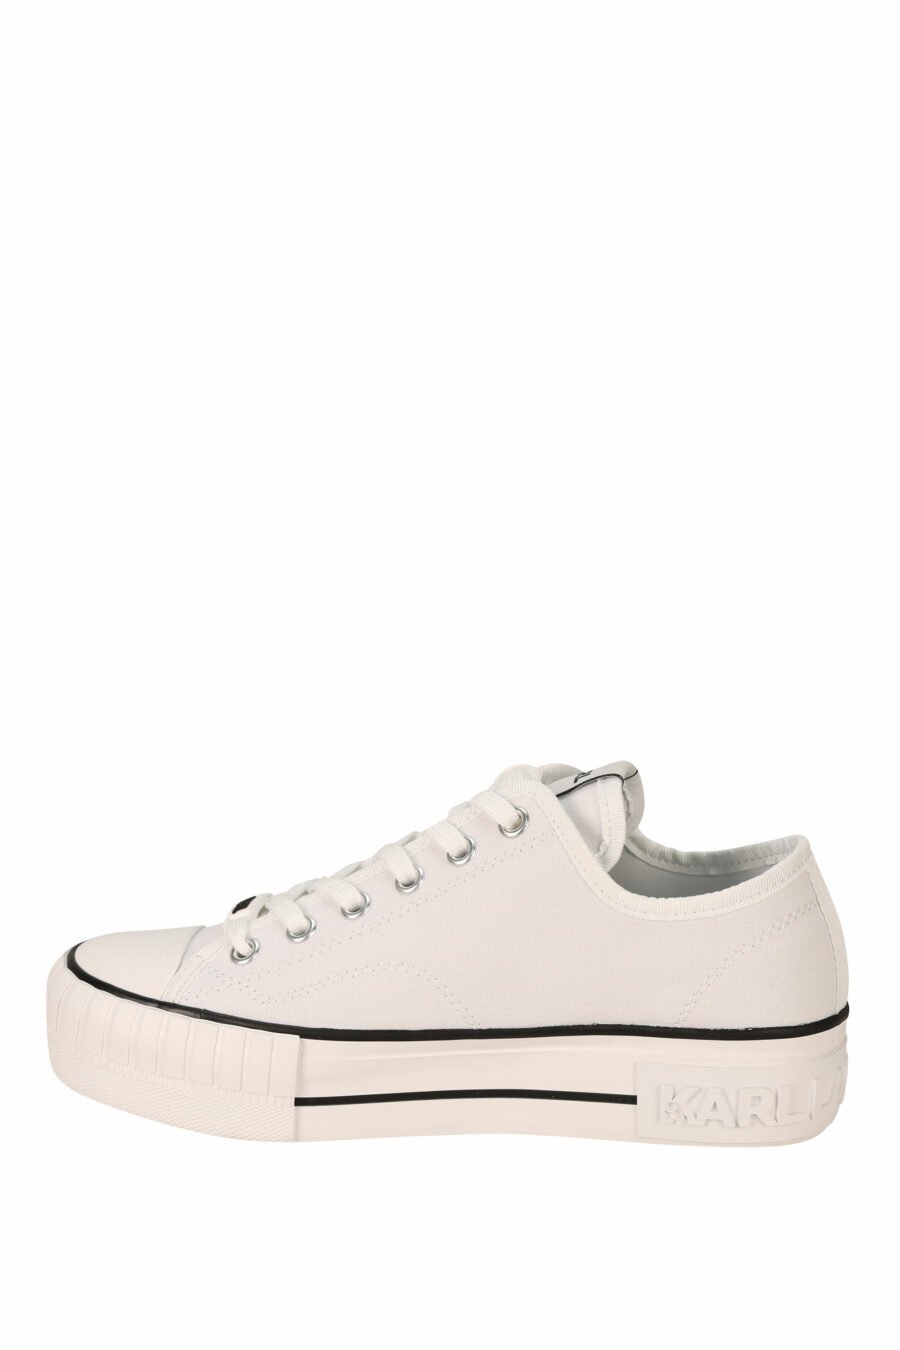 Zapatillas blancas estilo "converse" con minilogo de goma "karl" - 5059529384639 2